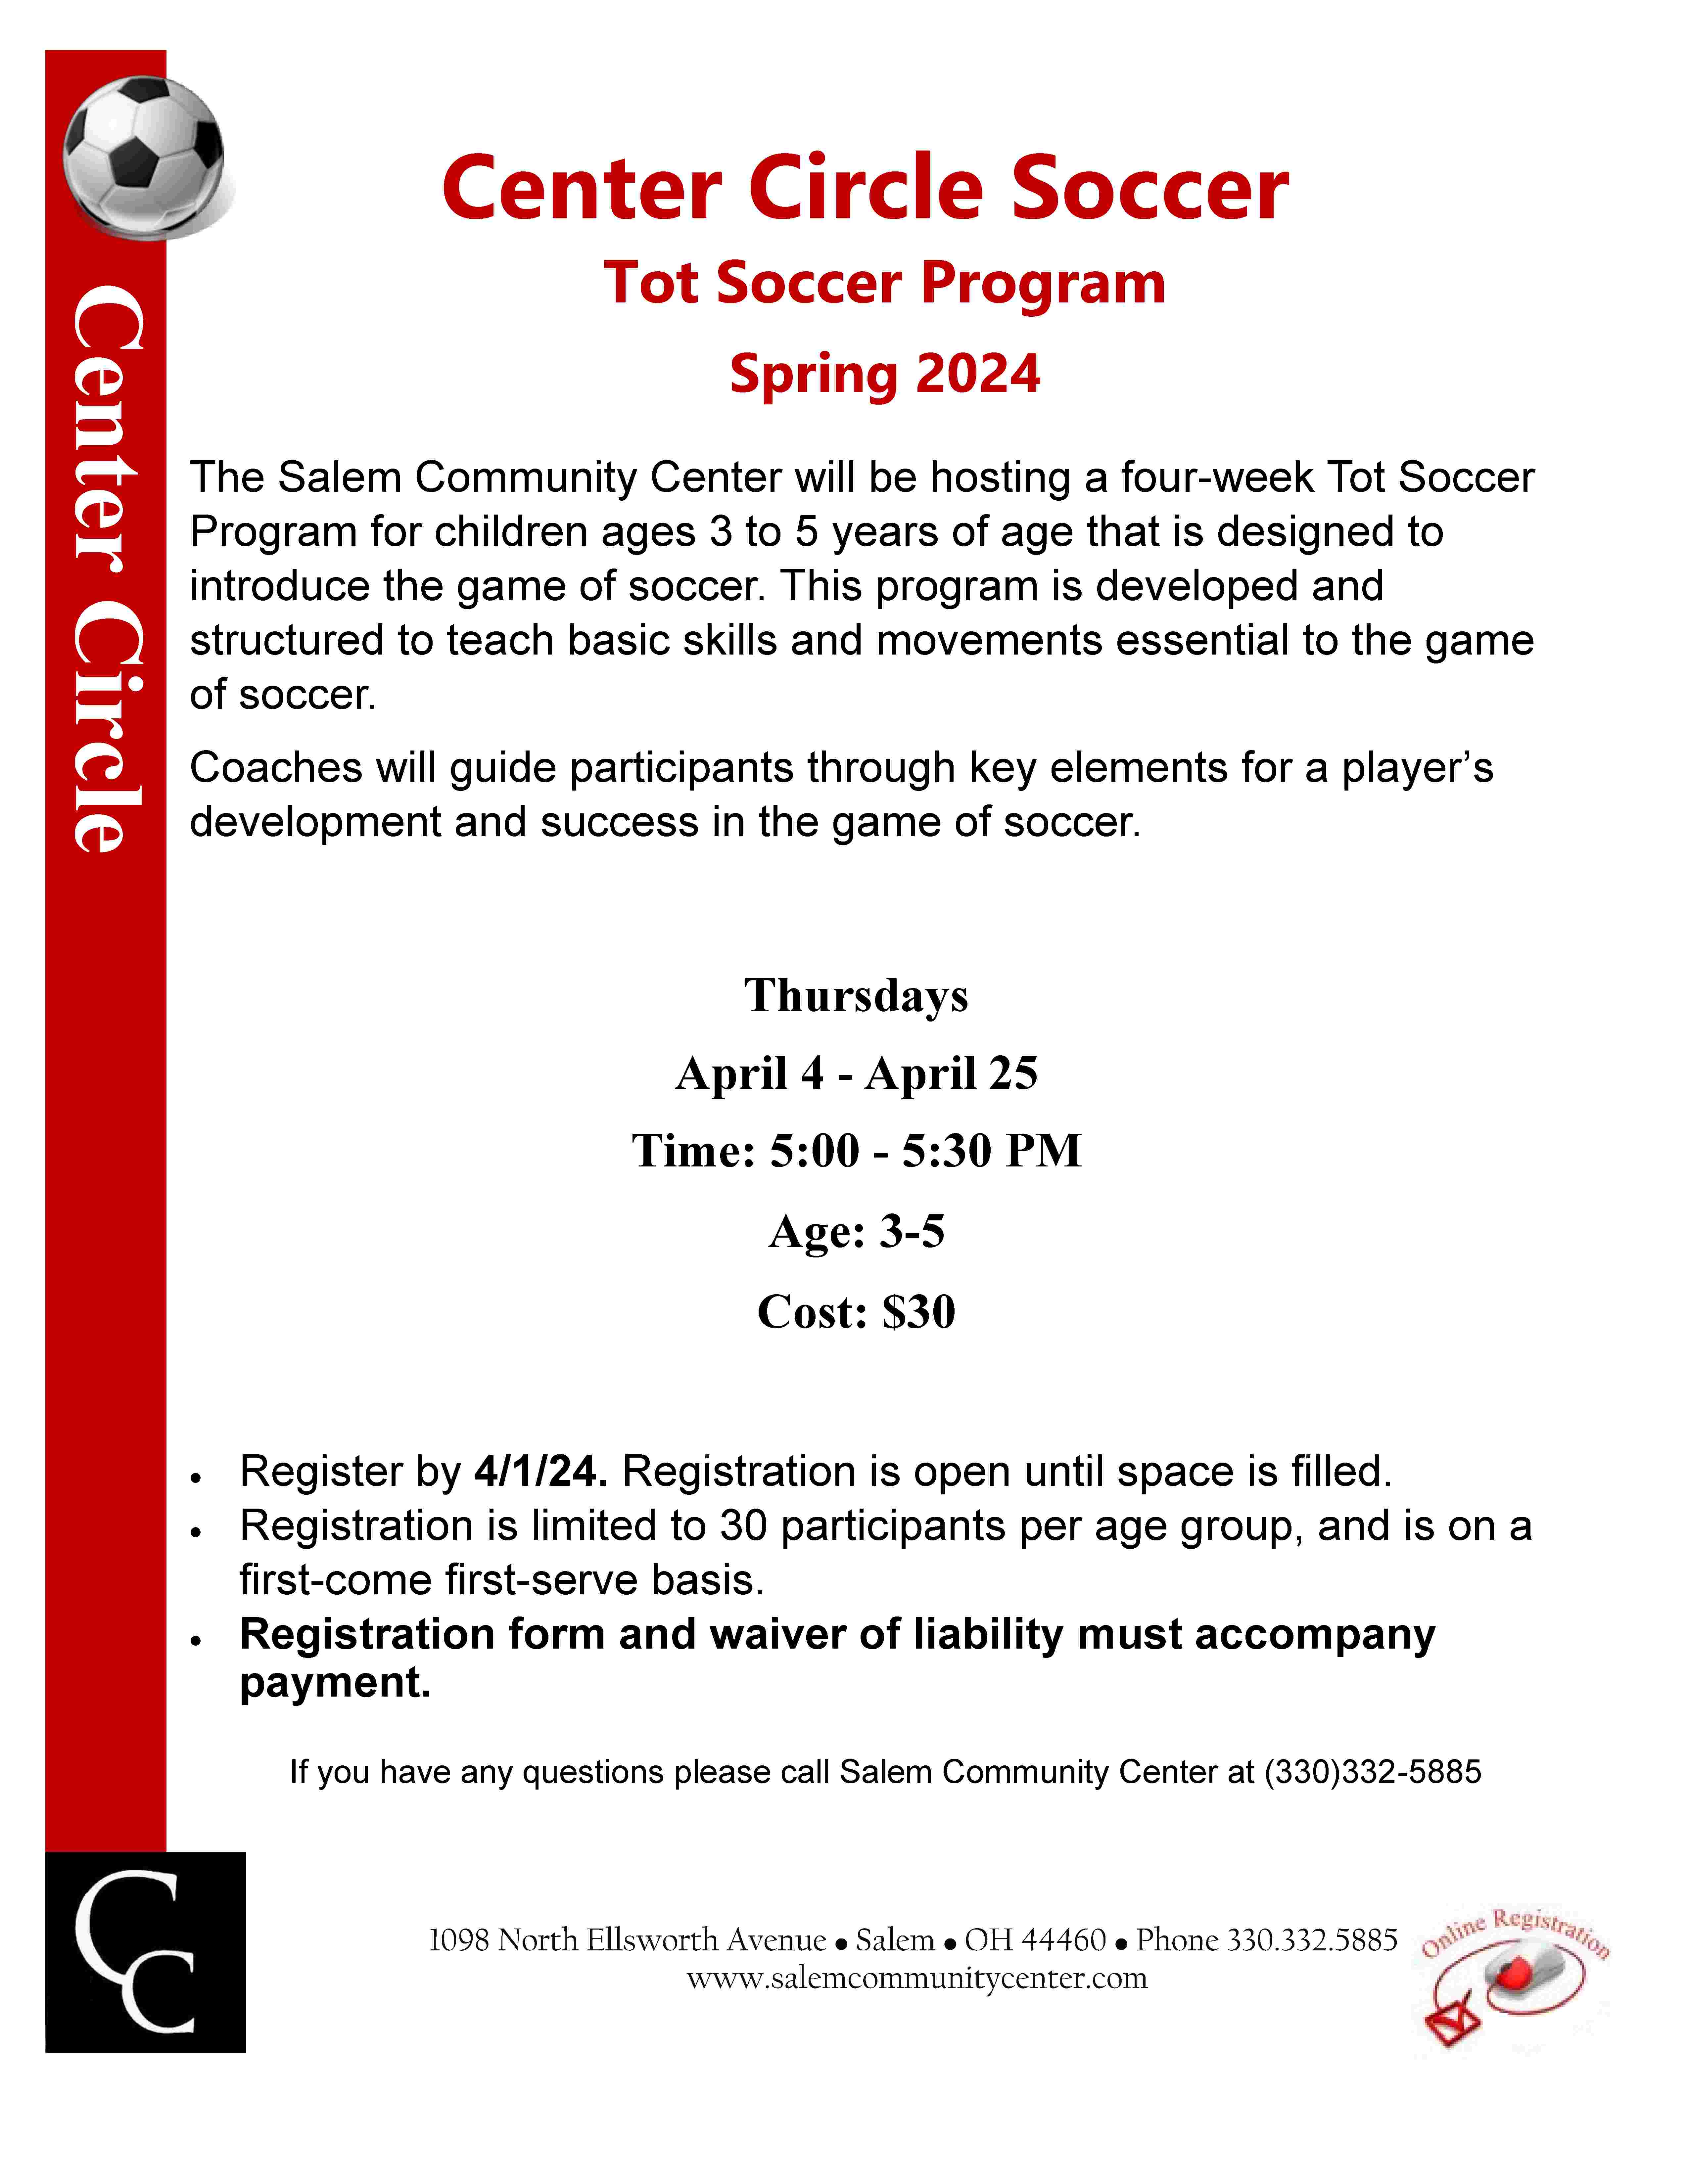 Tot Soccer Program April 2024 001